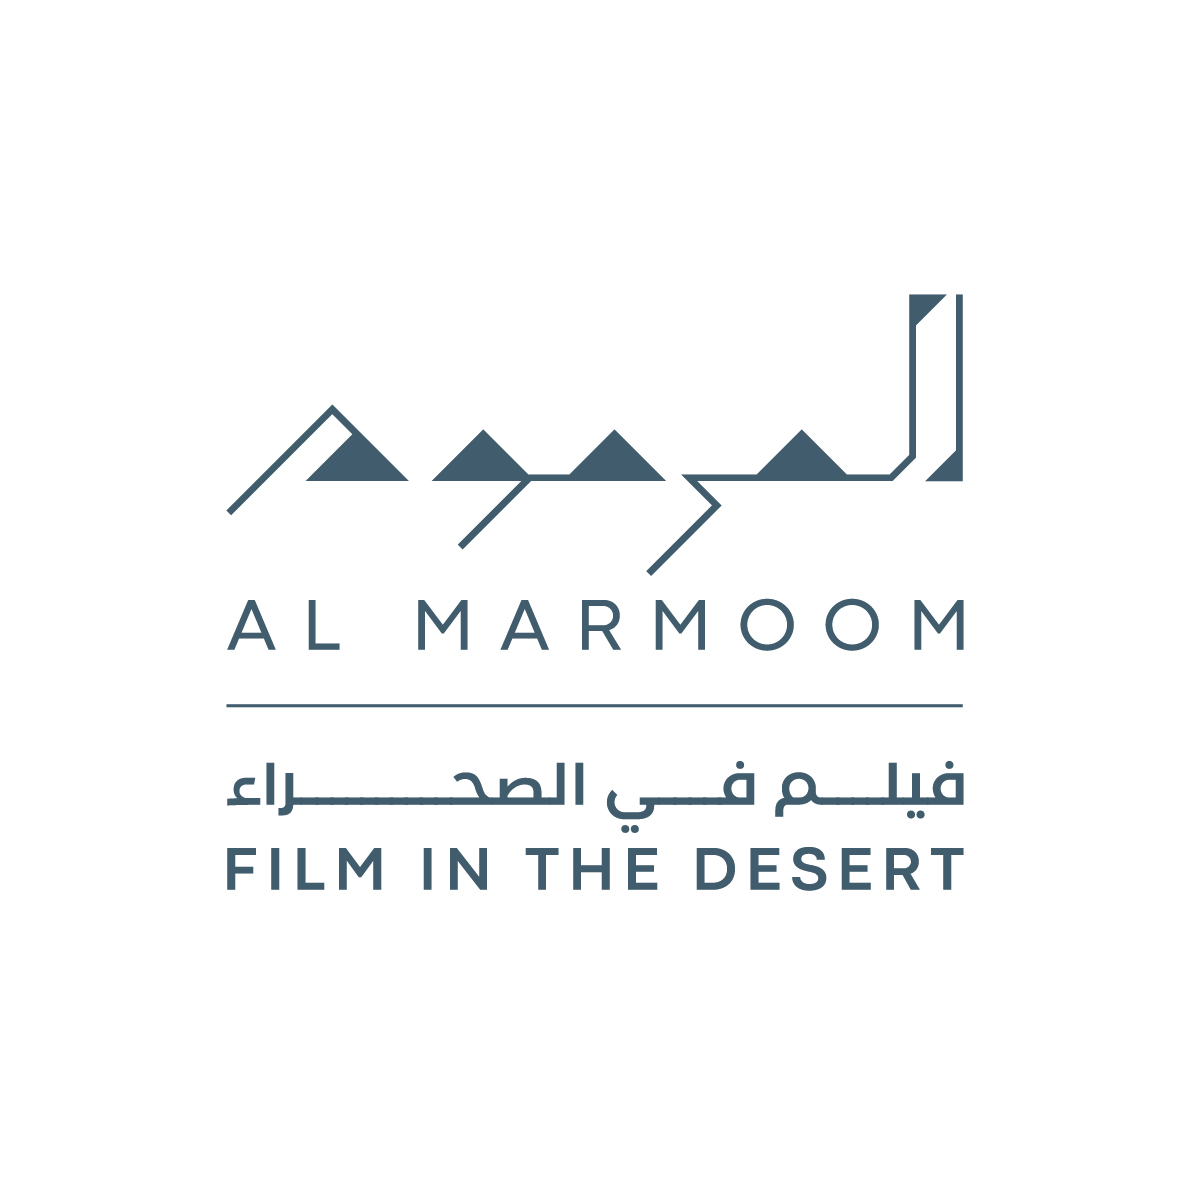 Film in the Desert